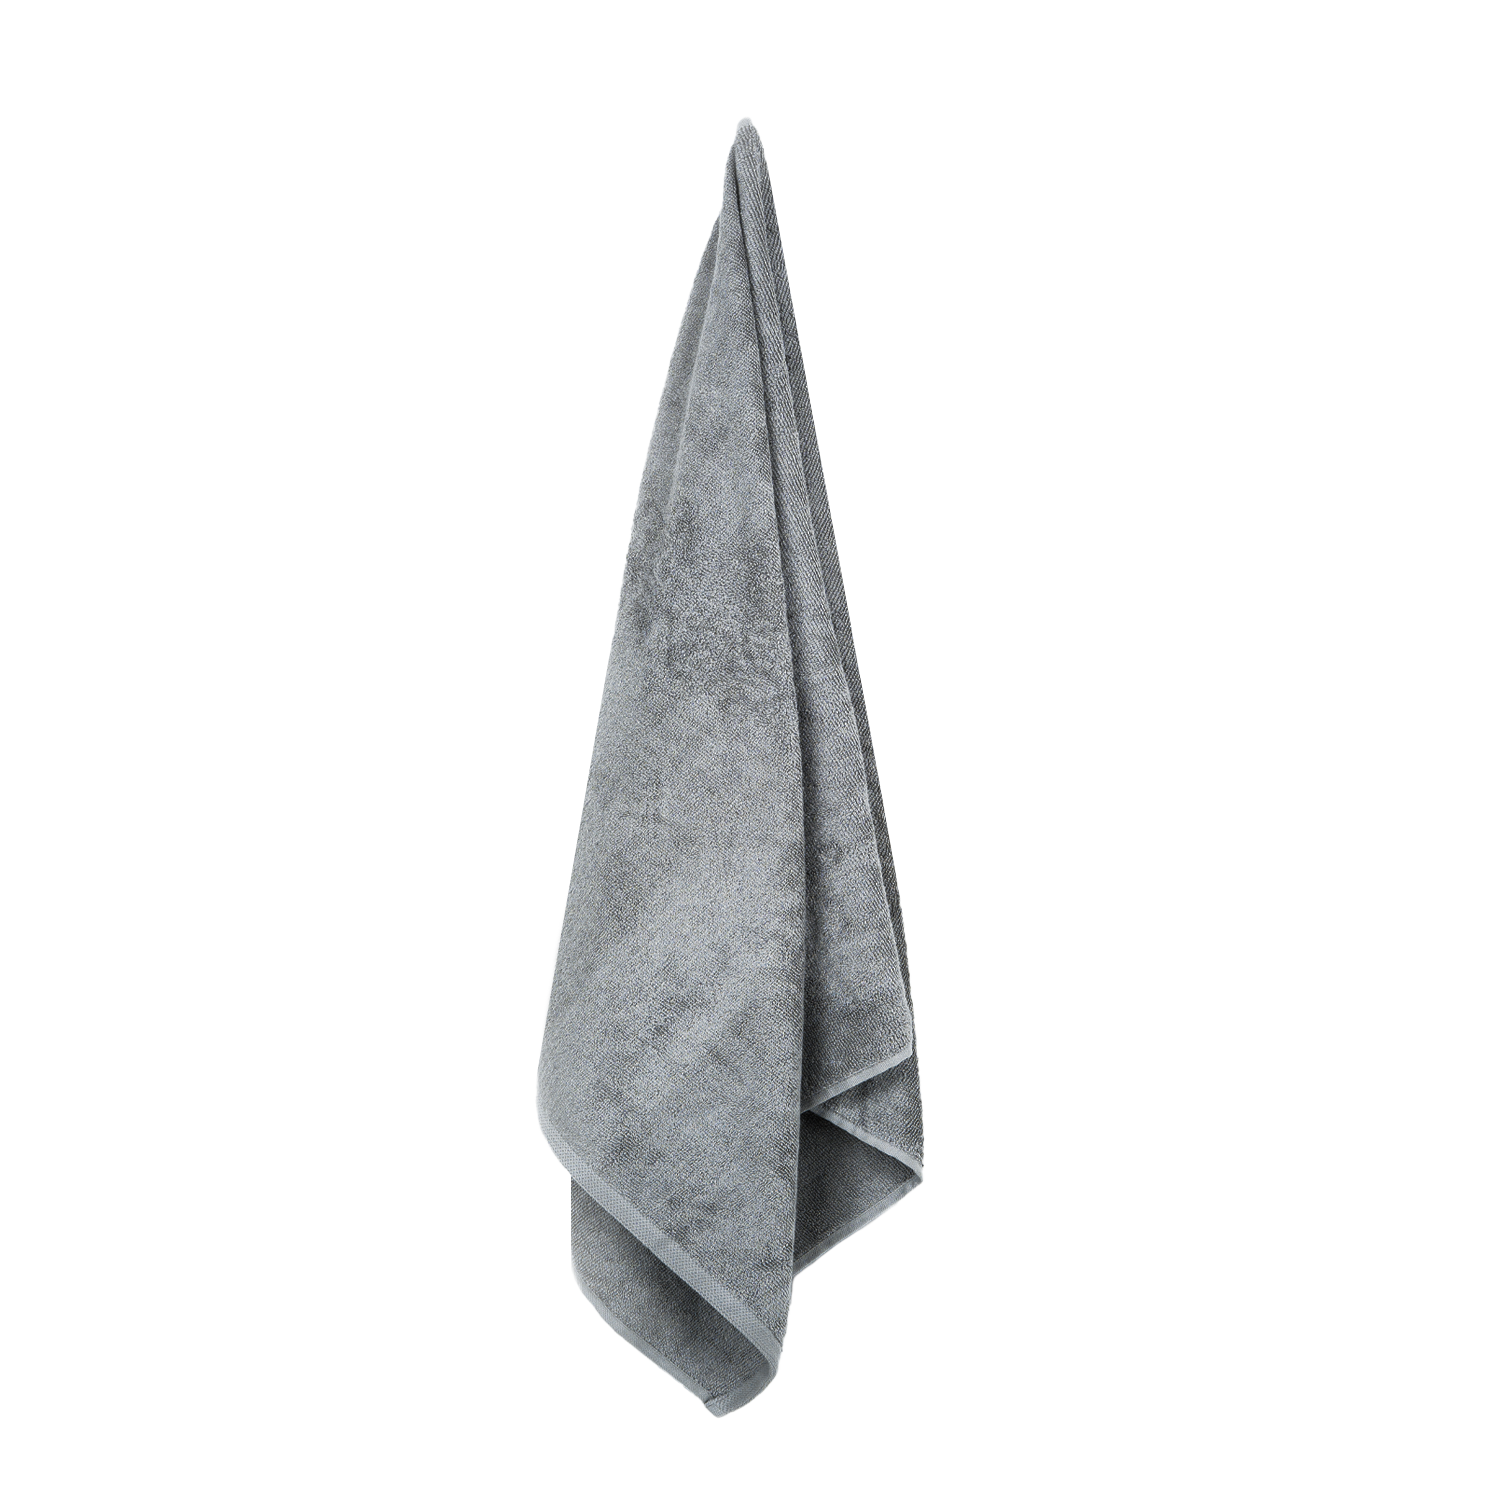 Produktbillede af bambushåndklæde i grå